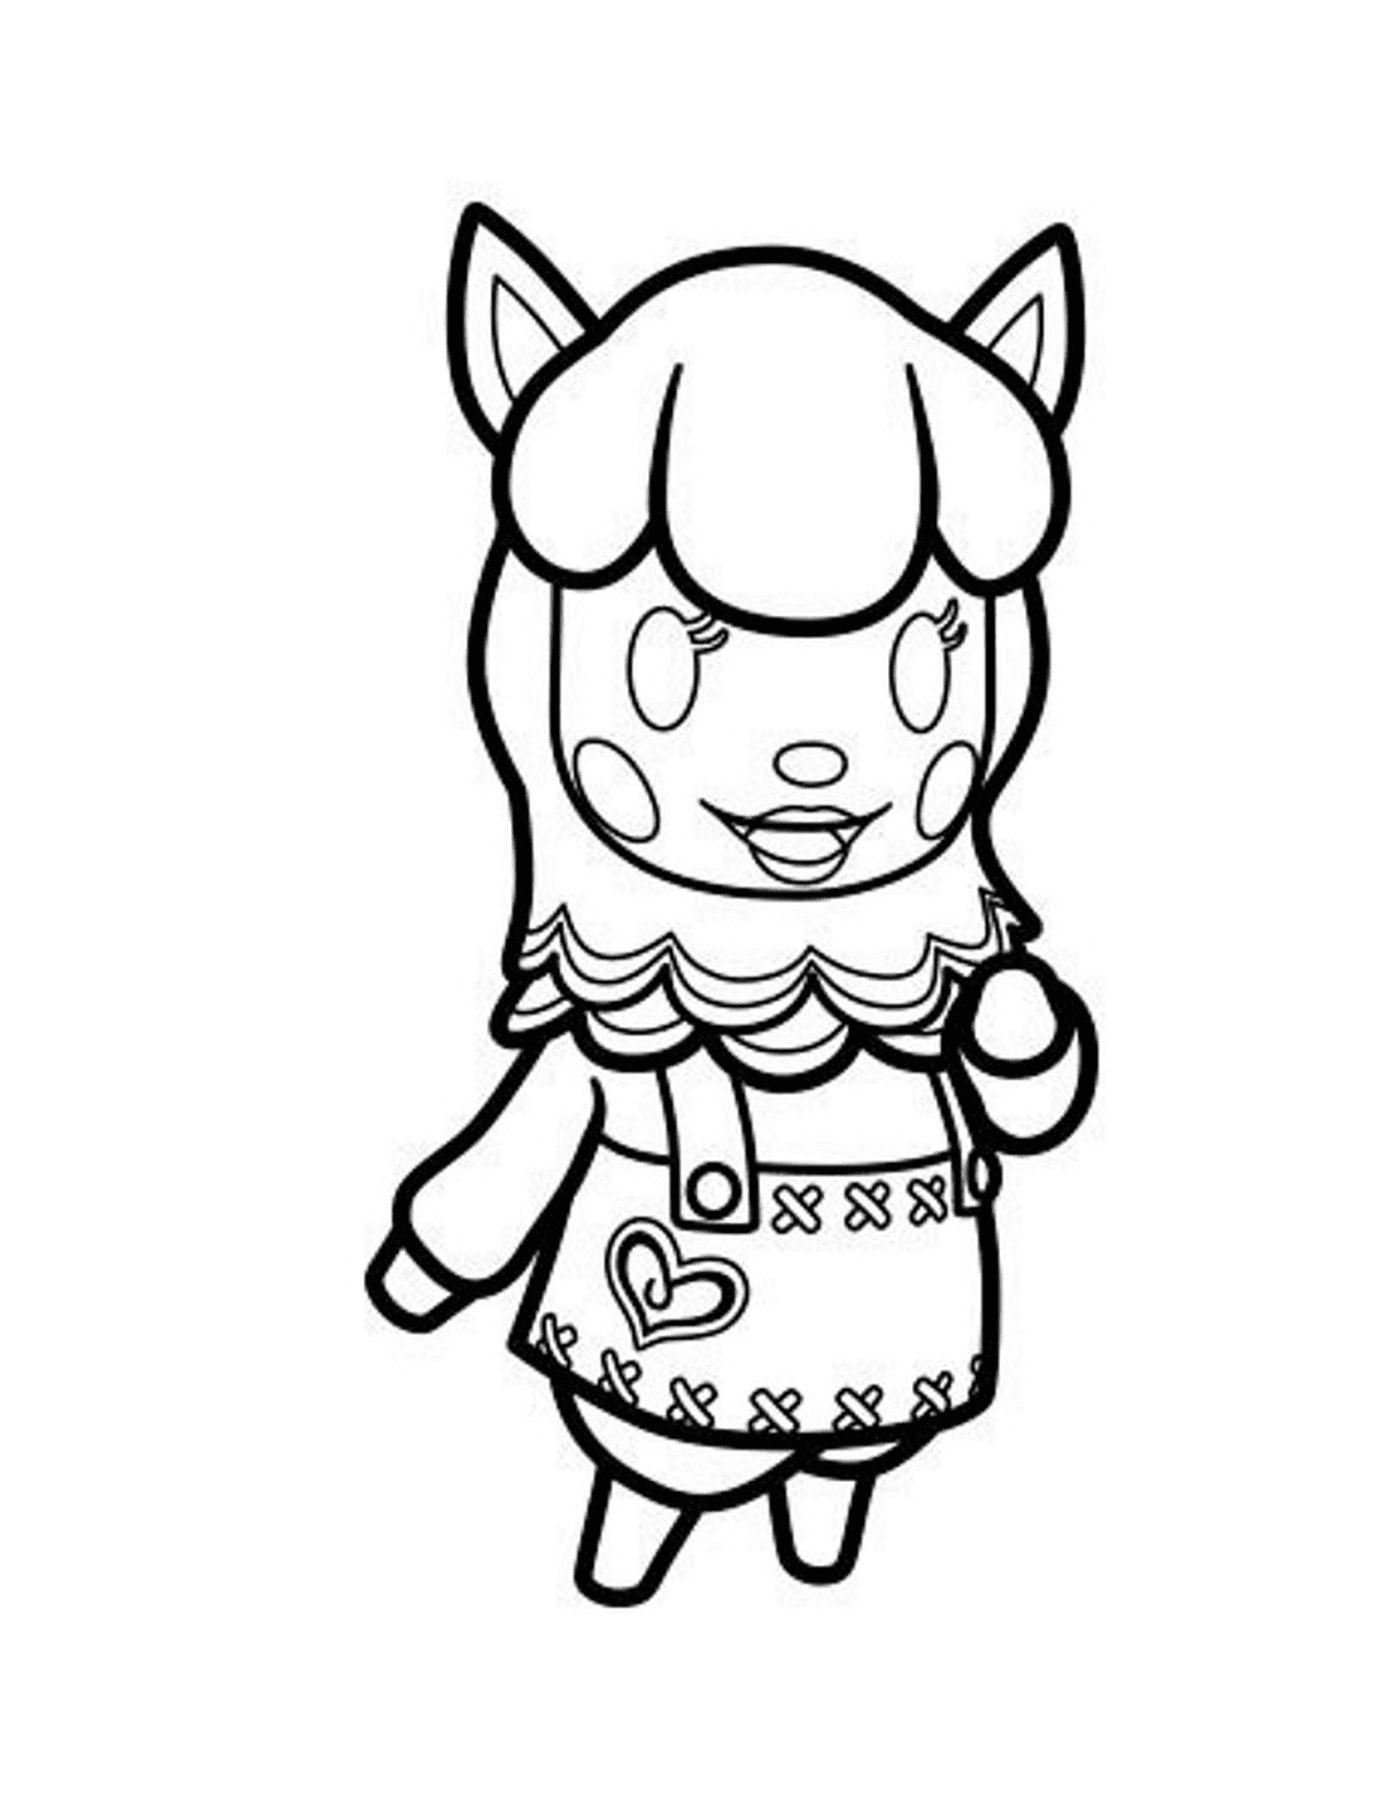  Animal Crossing 2, chica en vestido 